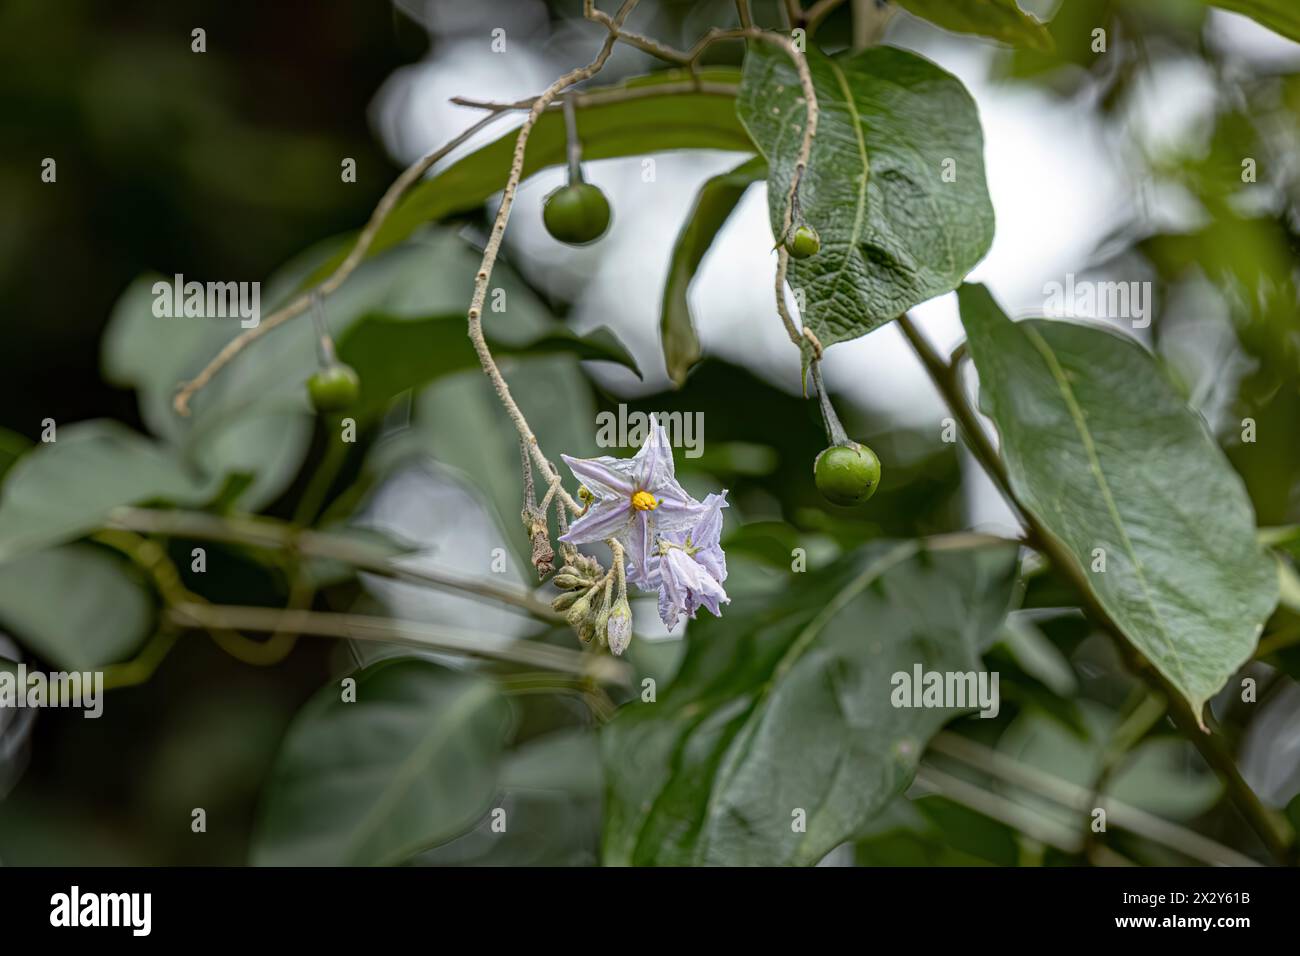 Pianta fiorente della specie Solanum paniculatum comunemente noto come jurubeba un nightshade comune in quasi tutto il Brasile Foto Stock